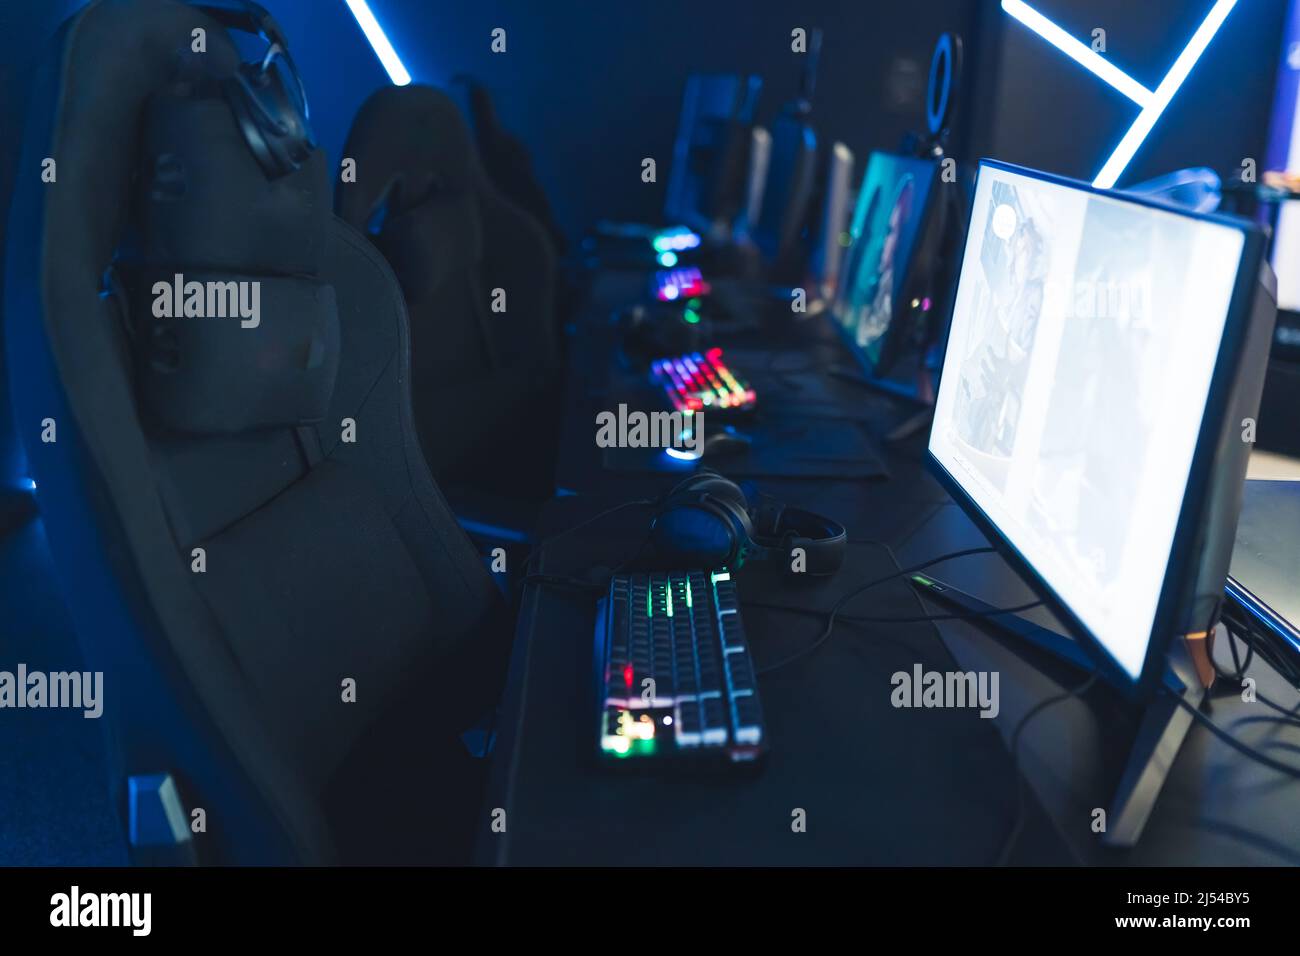 Leerer, leuchtender, neon beleuchteter Cybercafe-Raum mit Computern auf Tischen, professionellen Sitzen und beleuchteten Tastaturen, keine Menschen. Moderner Cybersport. Hochwertige Fotos Stockfoto